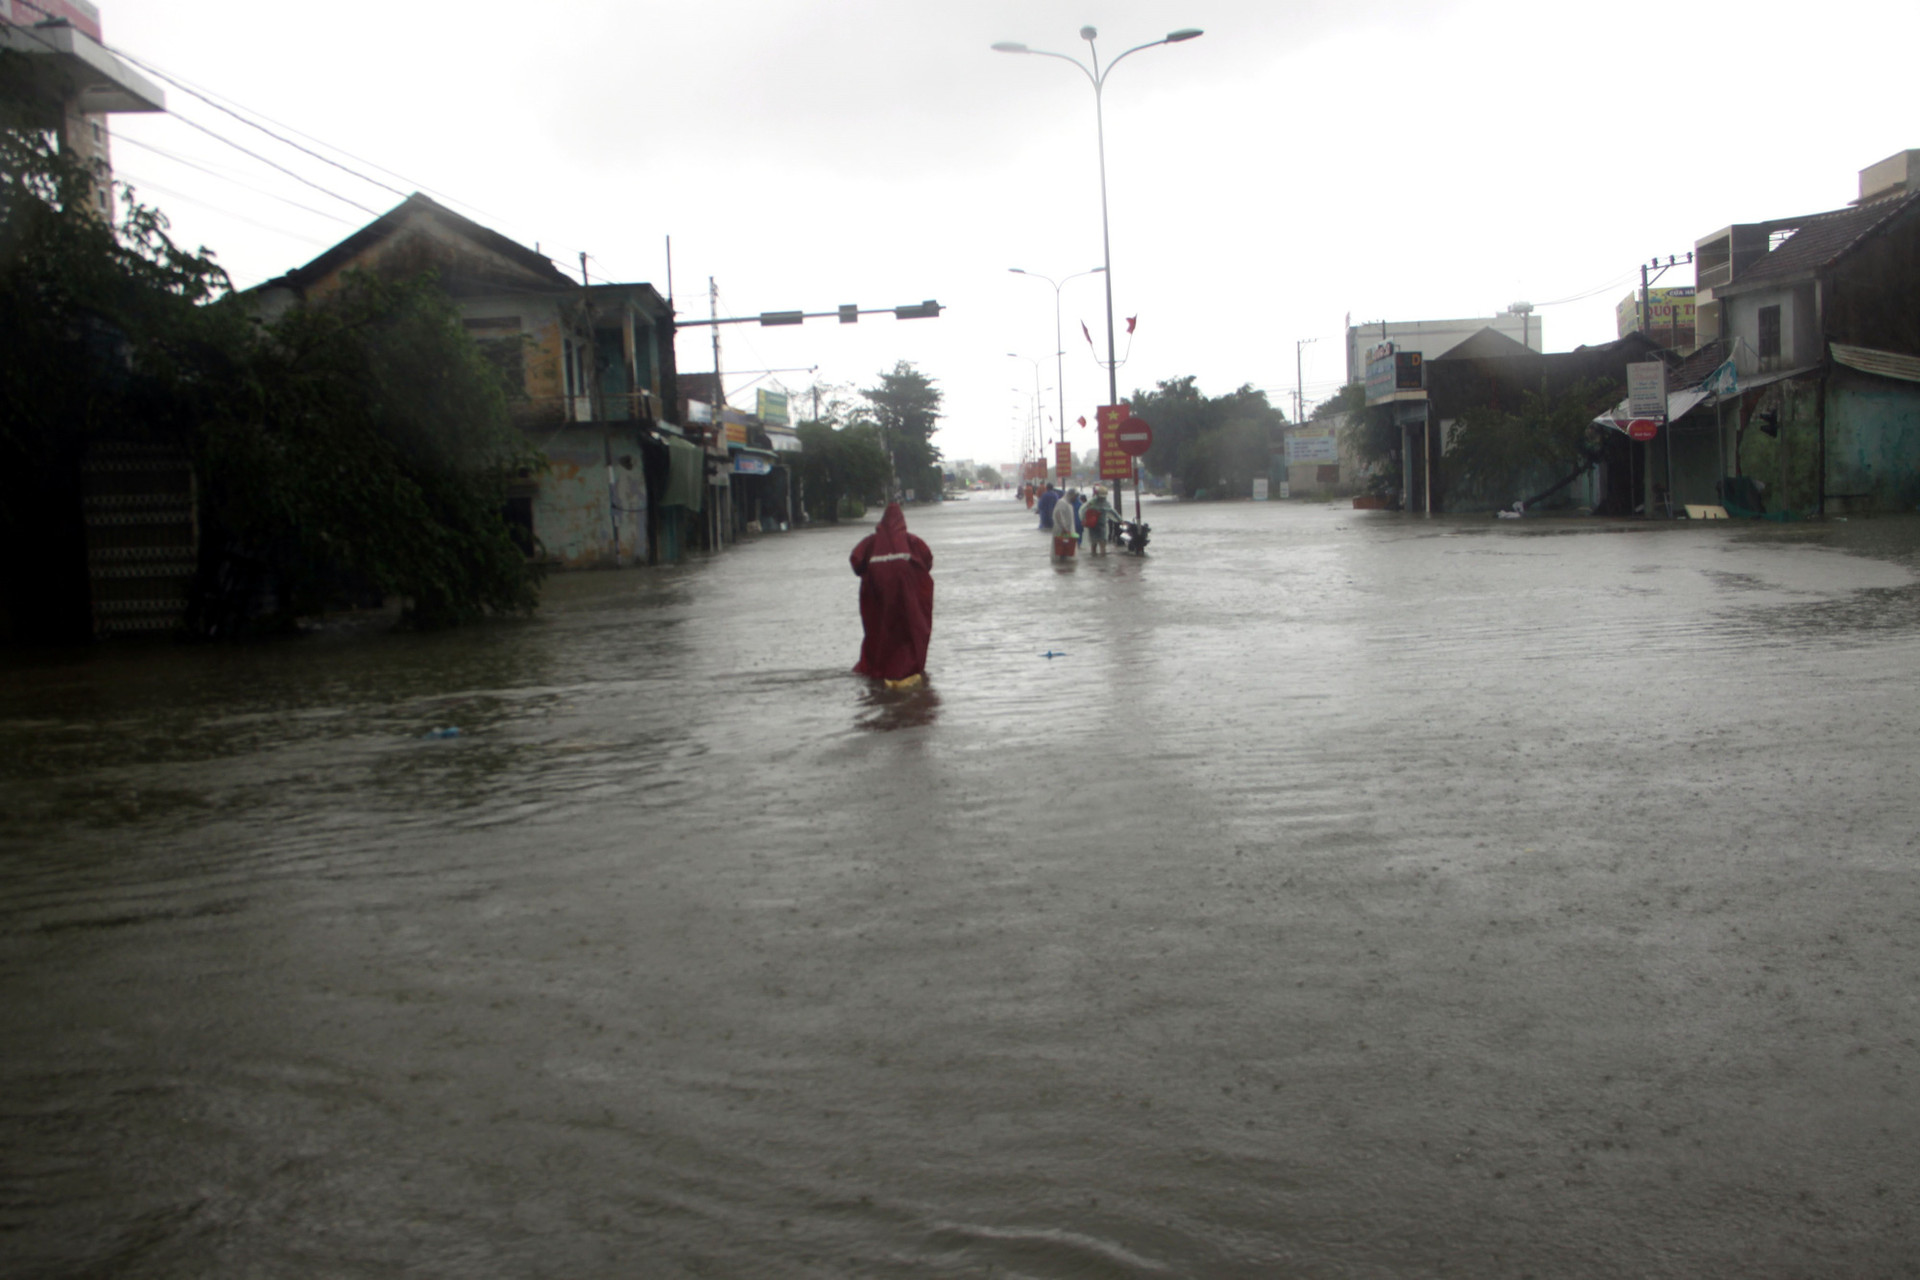 Quảng Nam: Hơn 73 ngôi nhà, nhiều công trình công cộng bị thiệt hại, hư hỏng do mưa lũ - Ảnh 3.